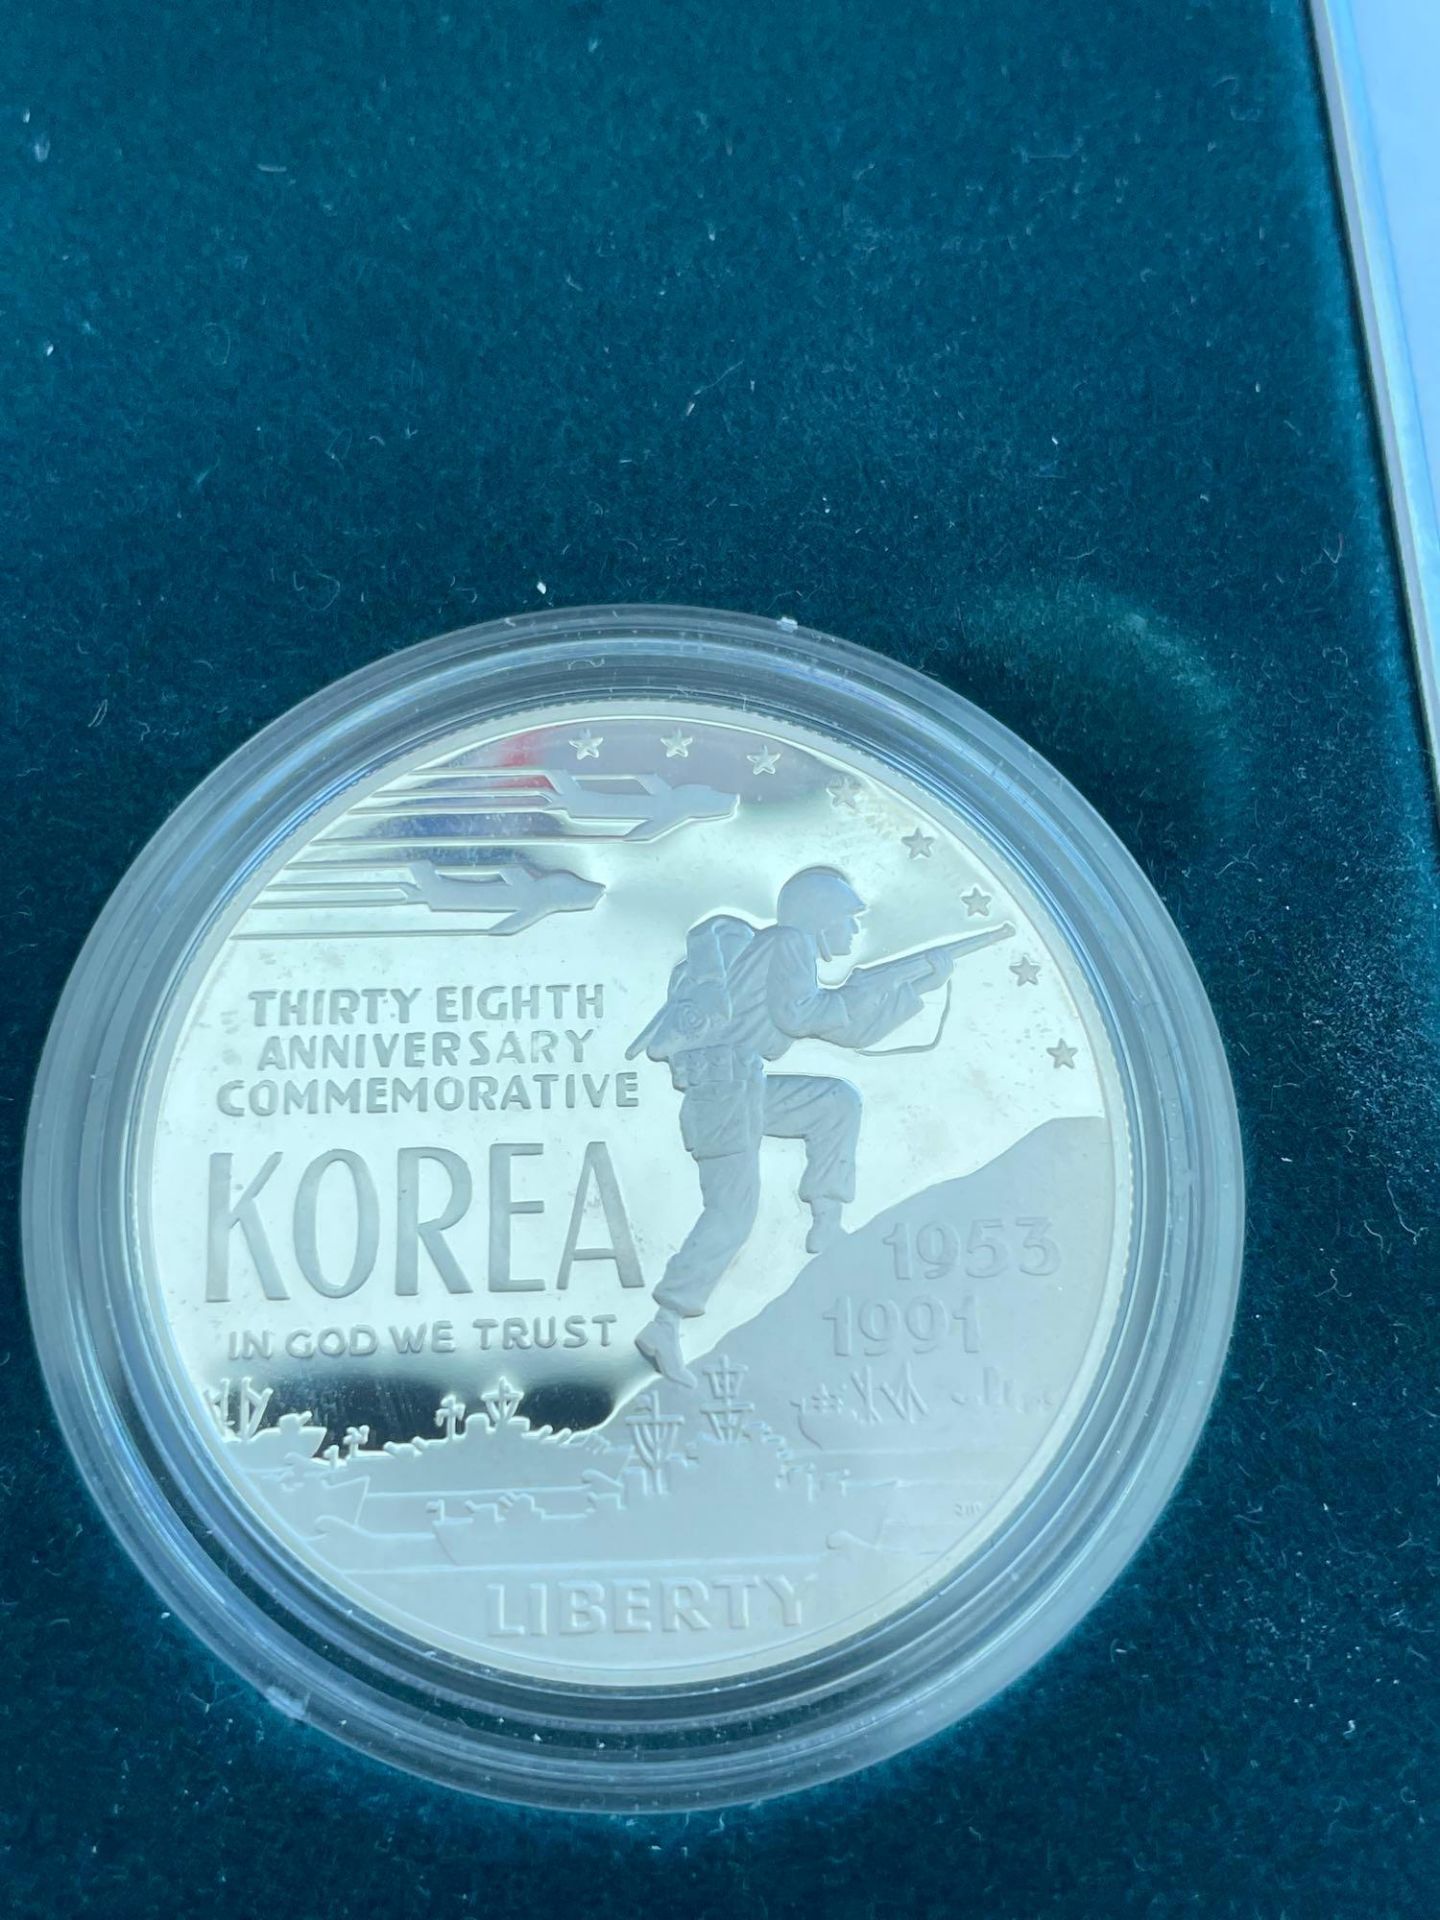 Korean War Silver Dollar Memorial Coin - Image 4 of 5